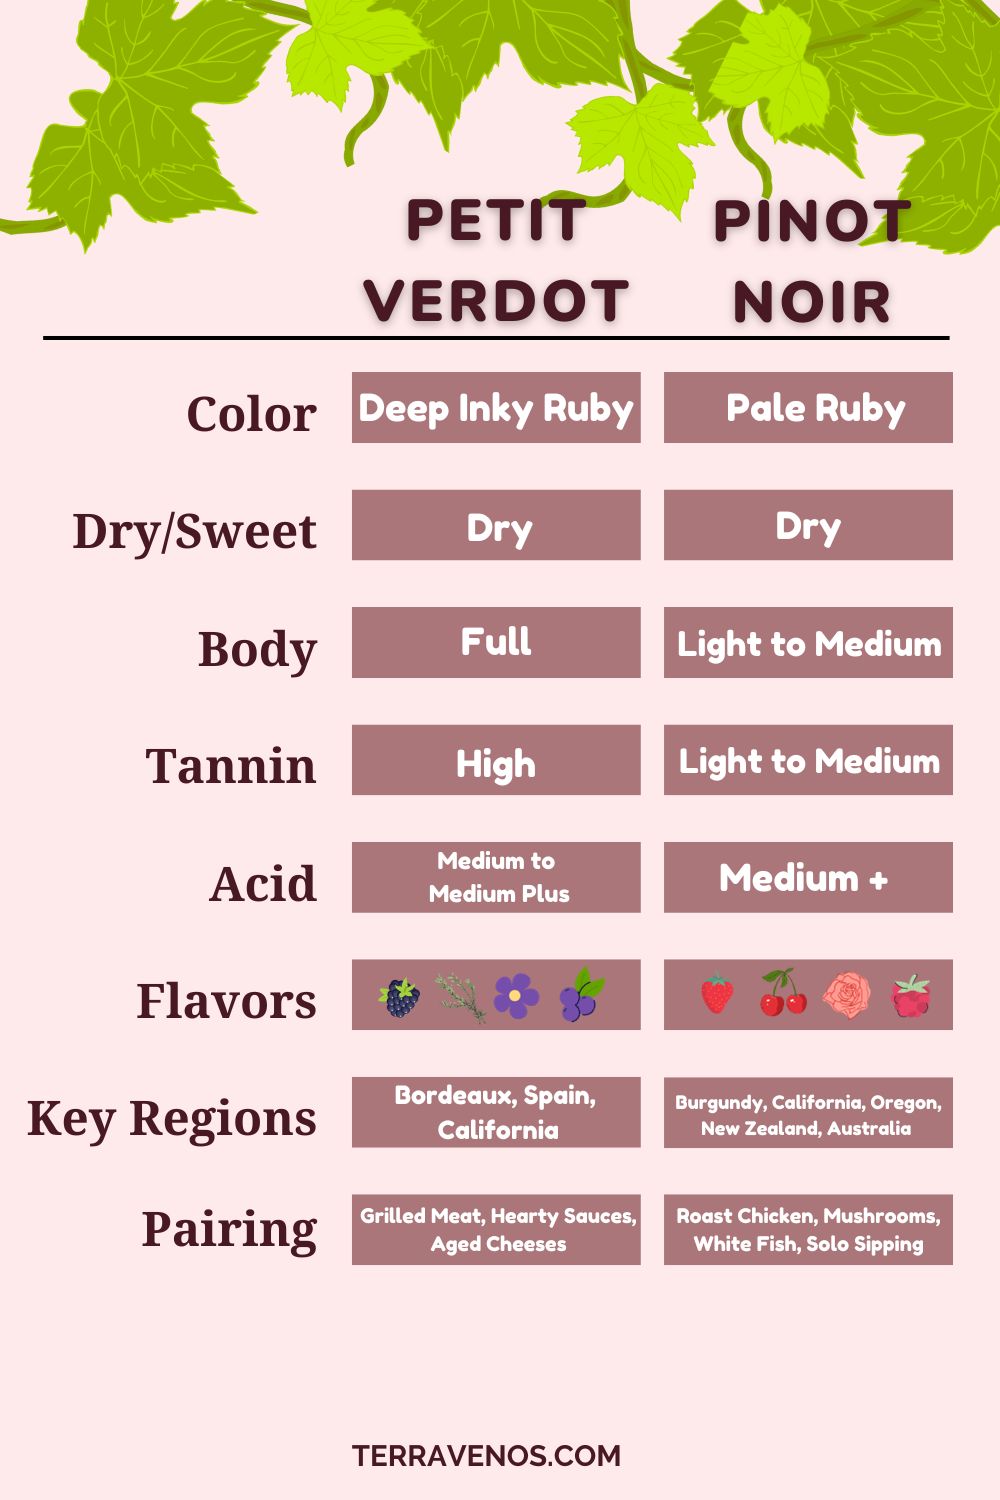 petit-verdot-vs-pinot-noir-wine-comparison-infographic